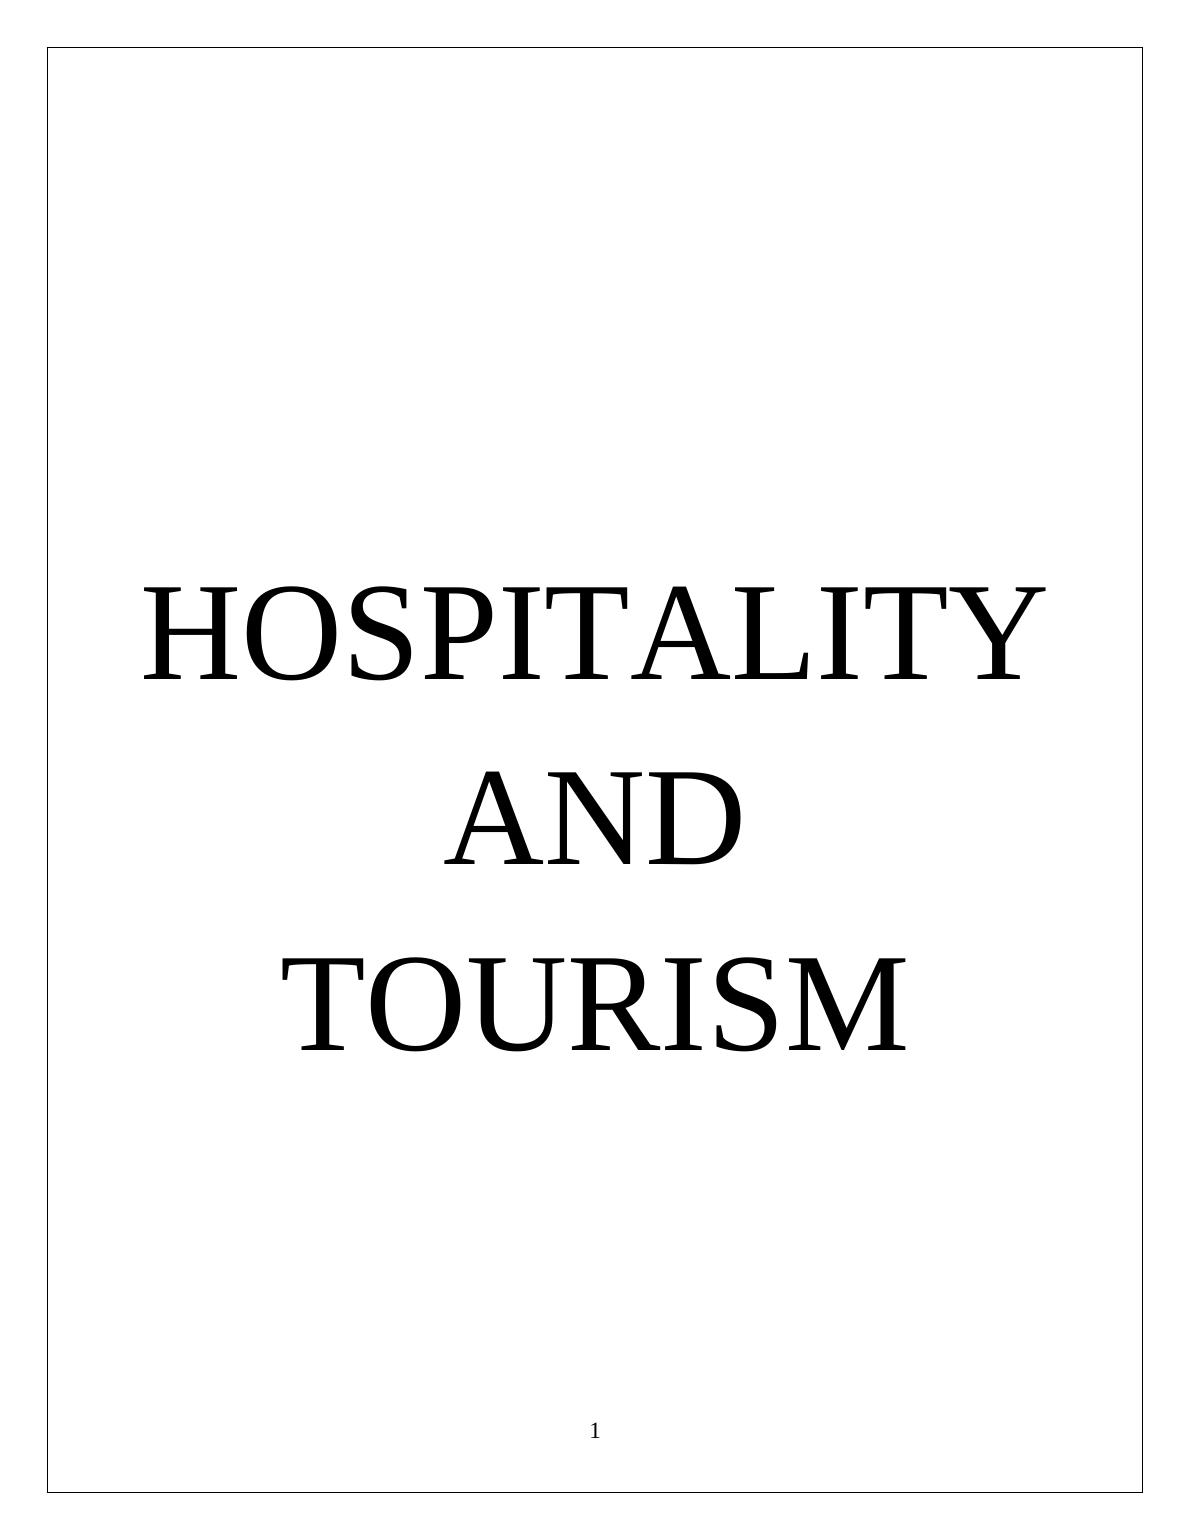 EMT309e - Hospitality and Tourism Management - Report_1